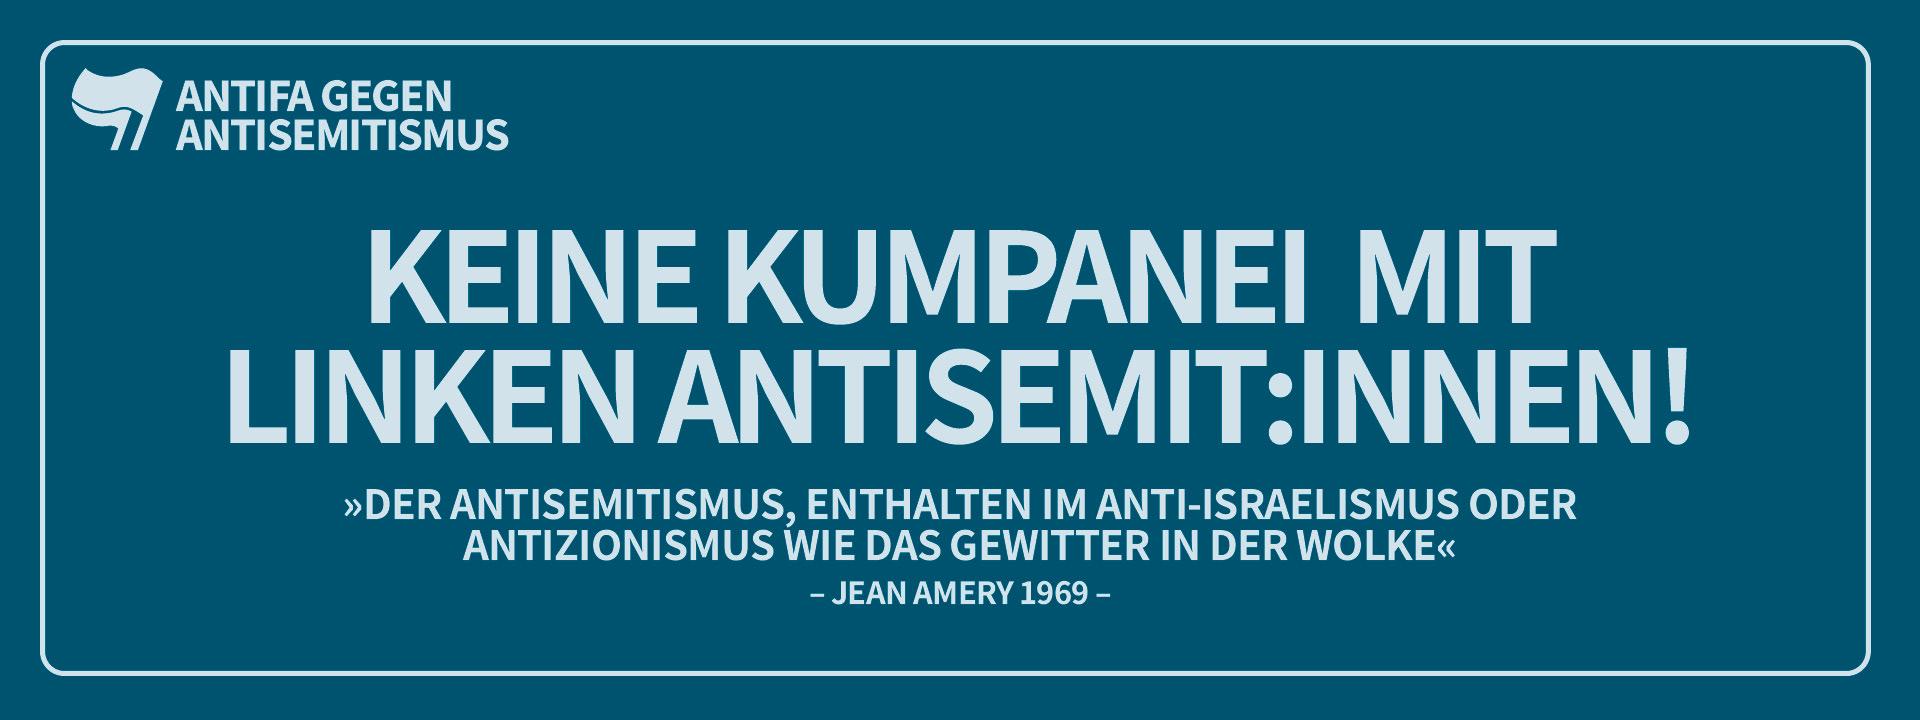 Keine Kumpanei mit linken Antisemit:innen